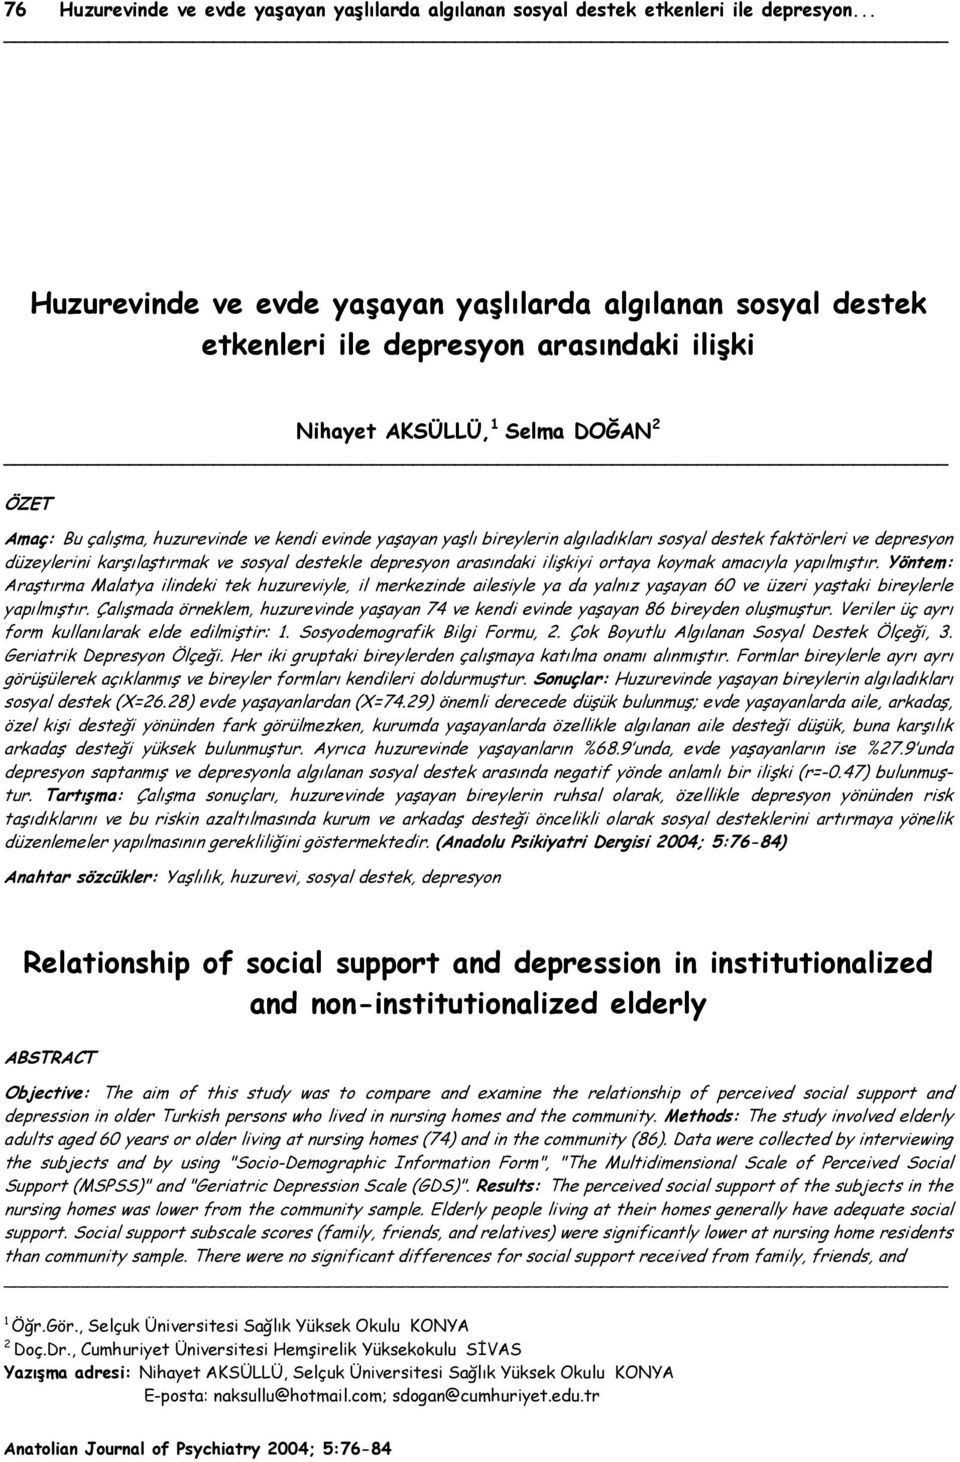 yaşlı bireylerin algıladıkları sosyal destek faktörleri ve depresyon düzeylerini karşılaştırmak ve sosyal destekle depresyon arasındaki ilişkiyi ortaya koymak amacıyla yapılmıştır.